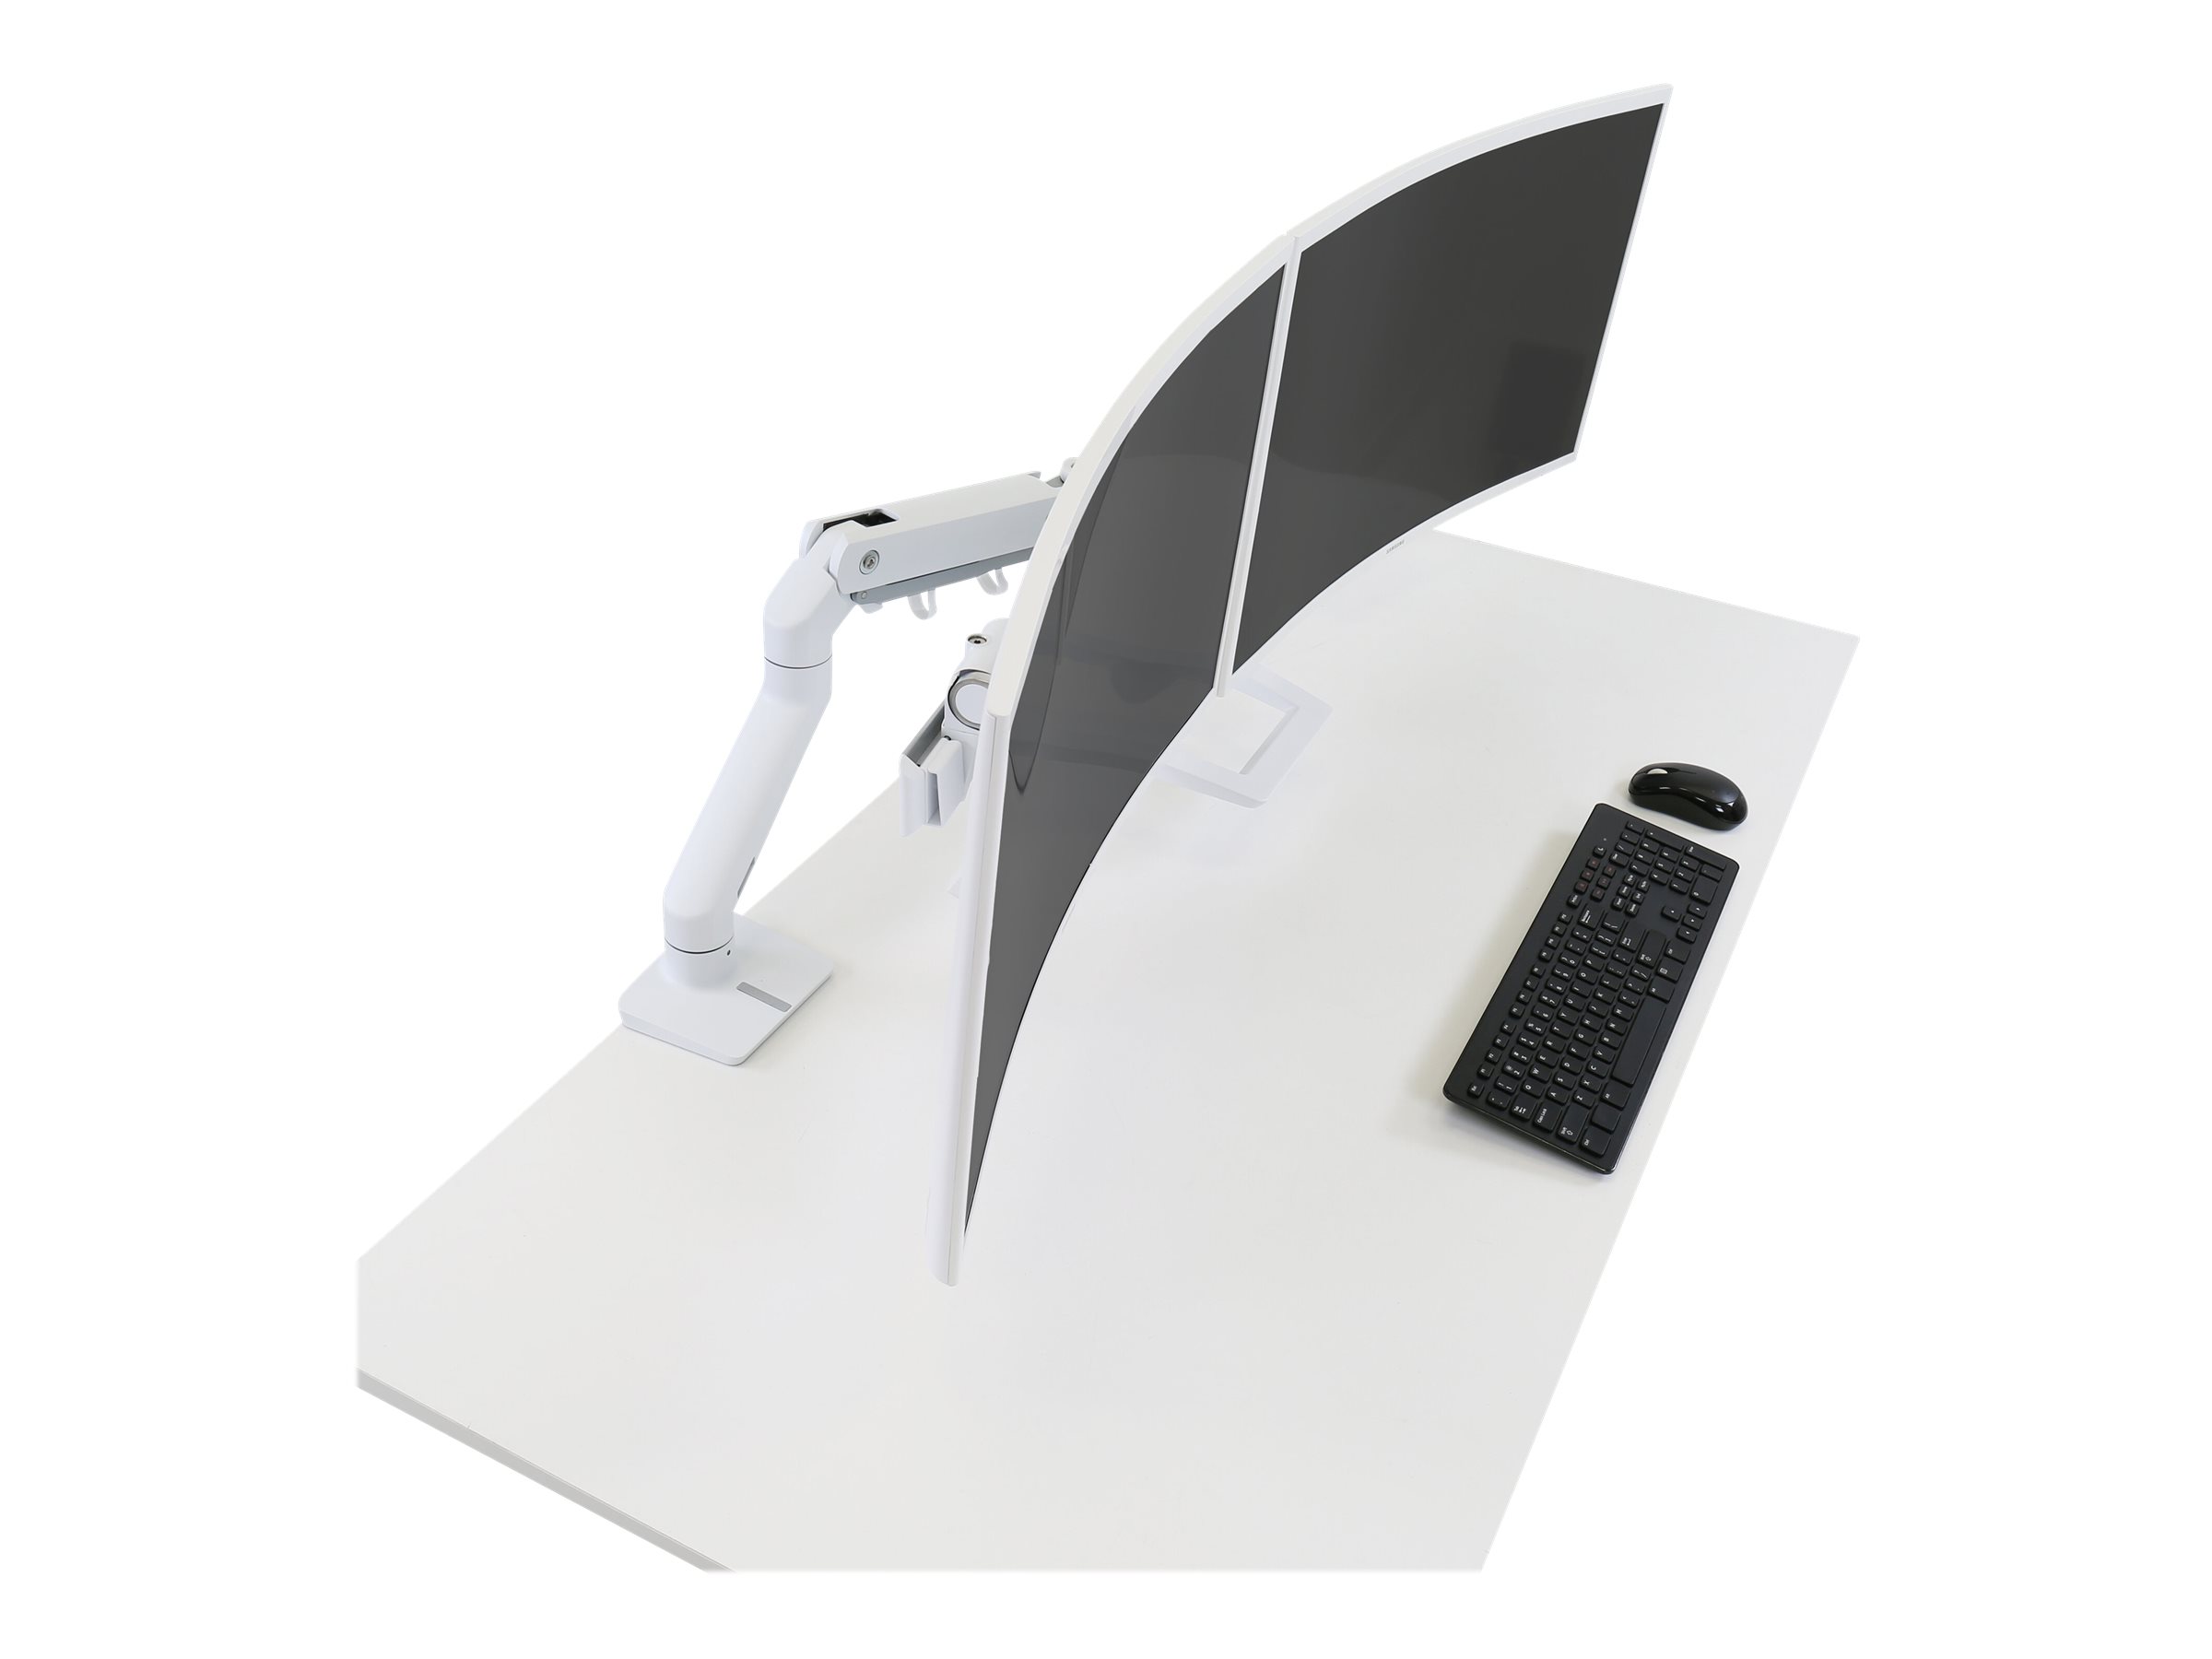 Ergotron HX - Kit de montage (poignée, bras articulé, fixation par pince pour bureau, montage par passe-câble, 2 pivots, arc charnière, extension) - Technologie brevetée Constant Force - pour 2 écrans LCD - blanc - Taille d'écran : jusqu'à 32 pouces - 45-476-216 - Accessoires pour écran